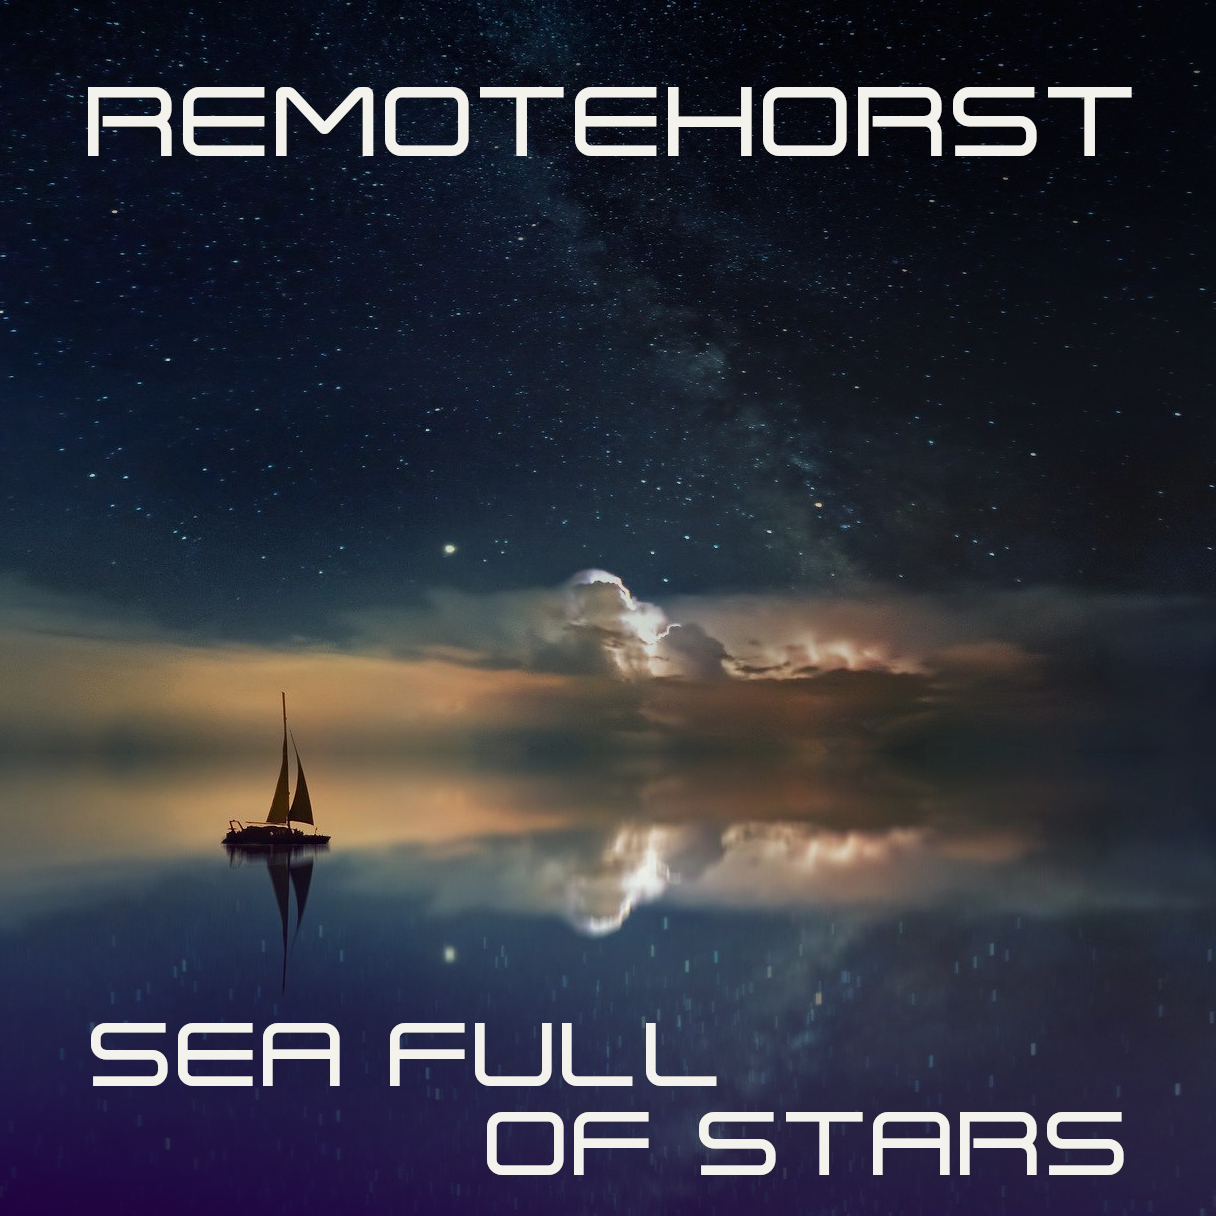 remotehorst_sea_full_of_stars_cover.jpg